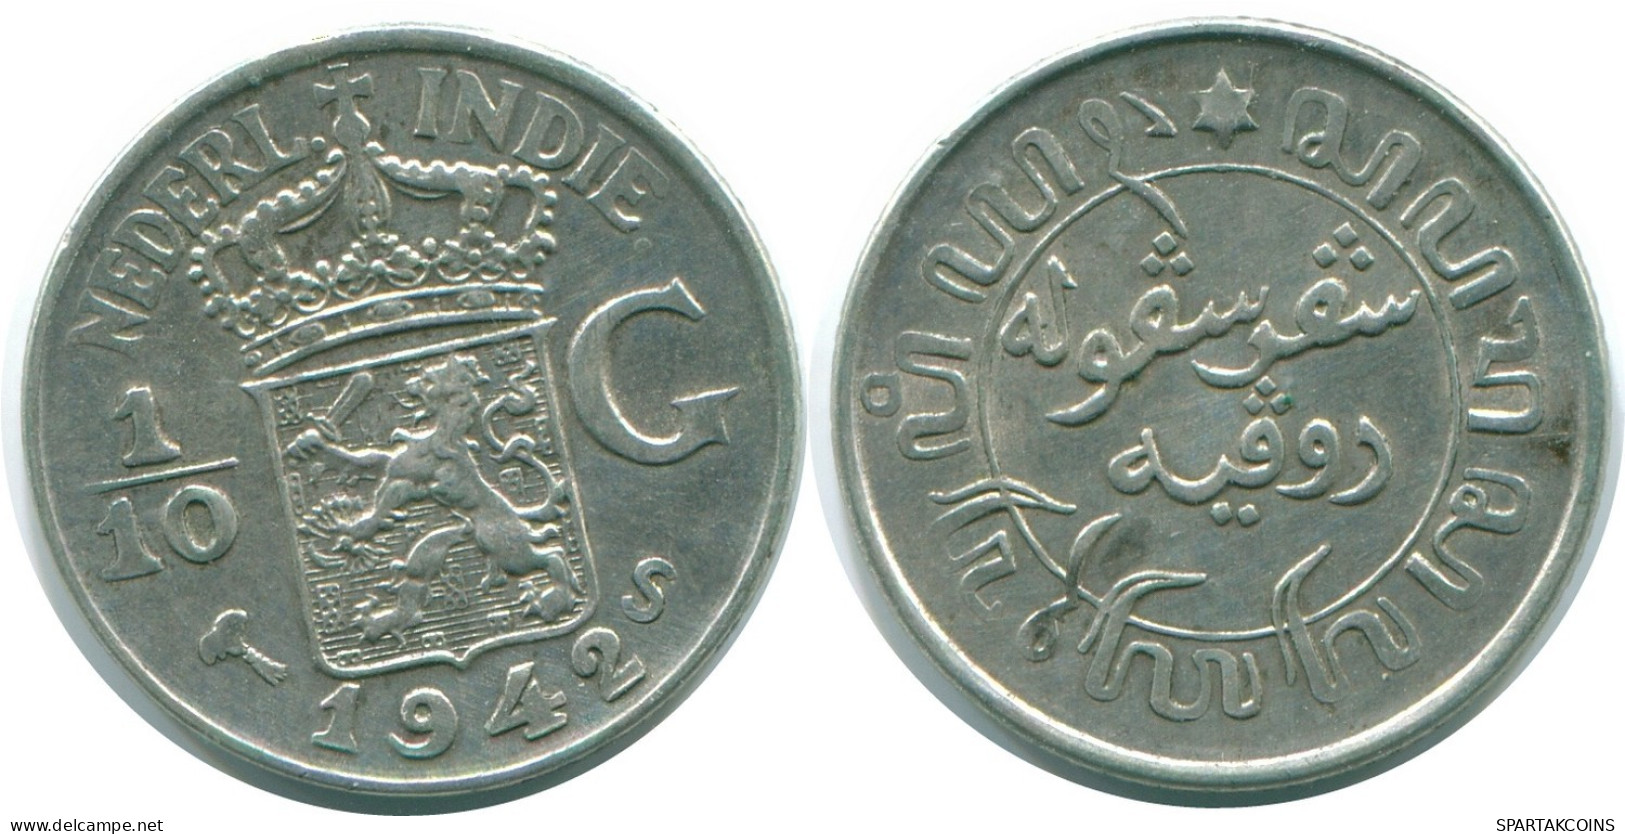 1/10 GULDEN 1942 NIEDERLANDE OSTINDIEN SILBER Koloniale Münze #NL13856.3.D.A - Niederländisch-Indien